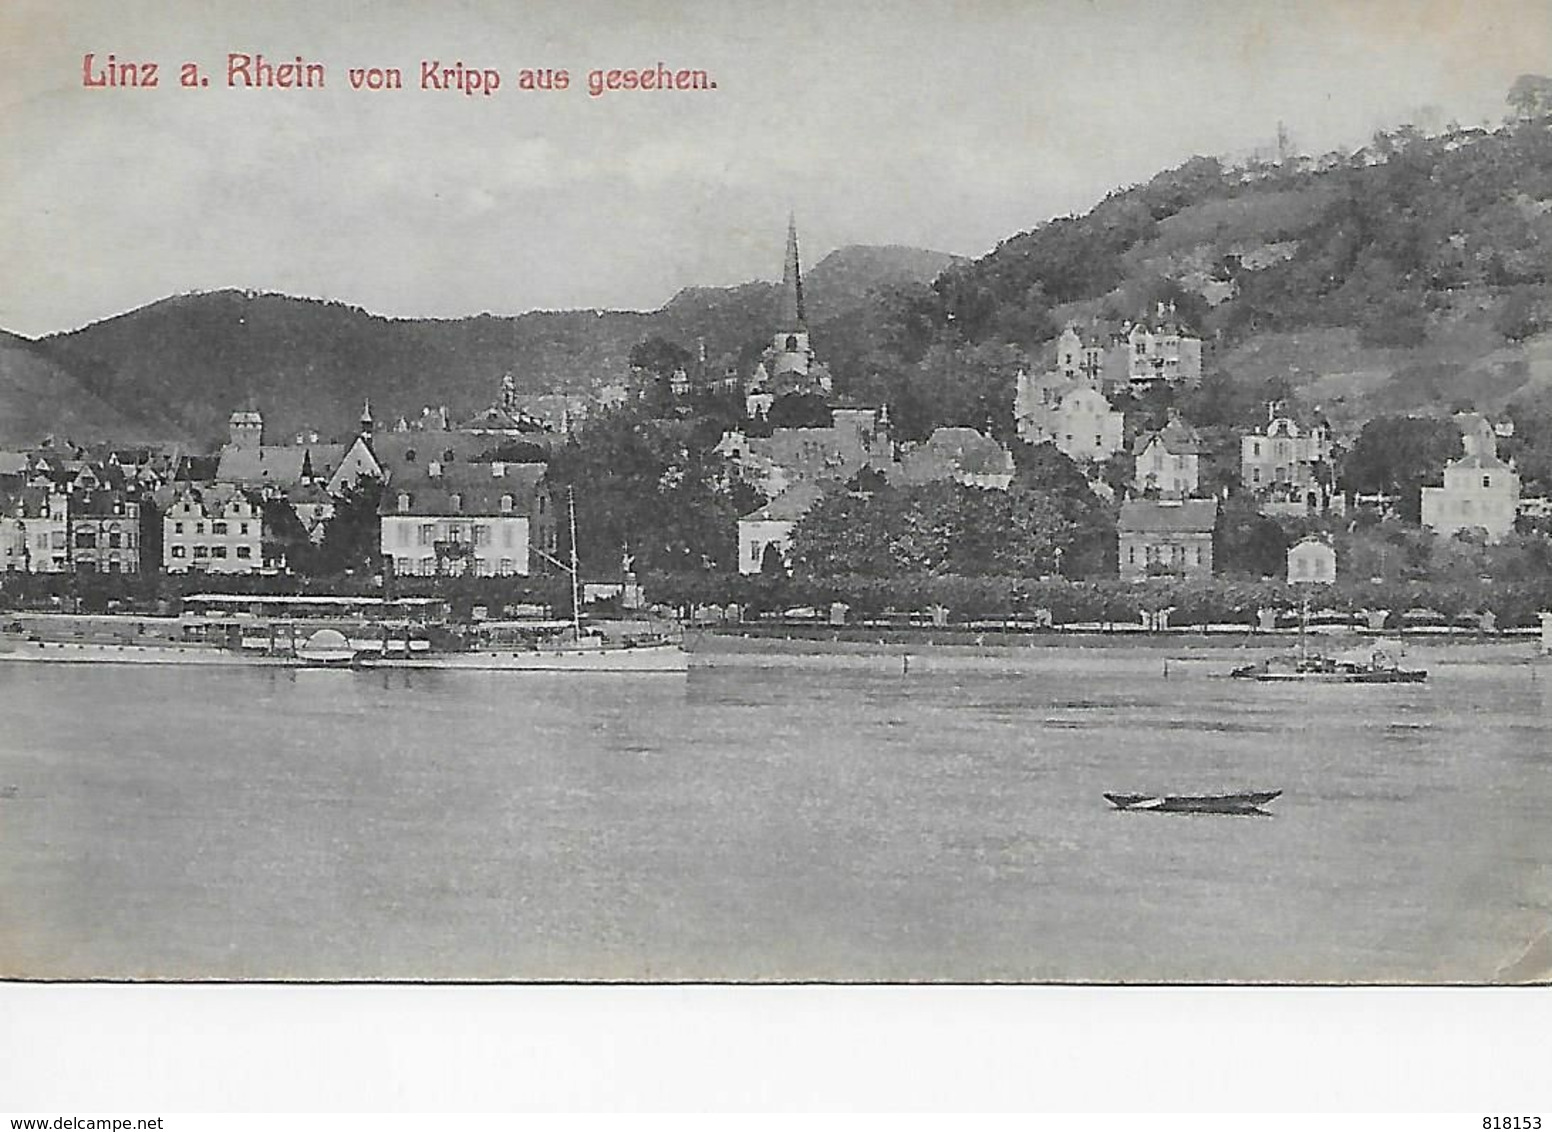 Linz A. Rhein Von Kripp Aus Gesehen - Linz A. Rhein